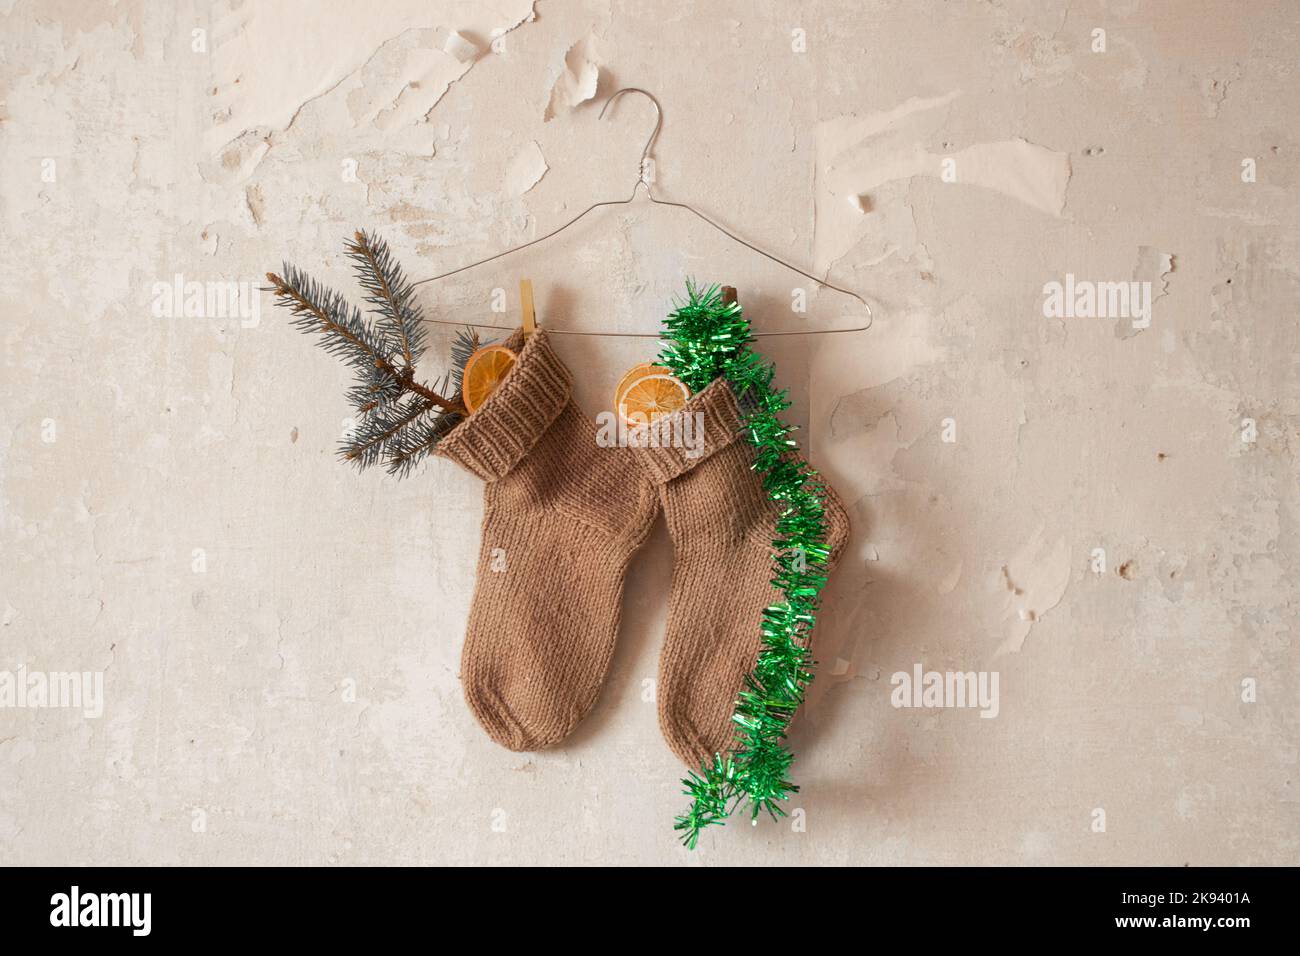 Calcetines de punto con una rama de Año Nuevo y una naranja seca y una guirnalda cuelgan en perchas en la pared, regalos de Año Nuevo en calcetines Foto de stock